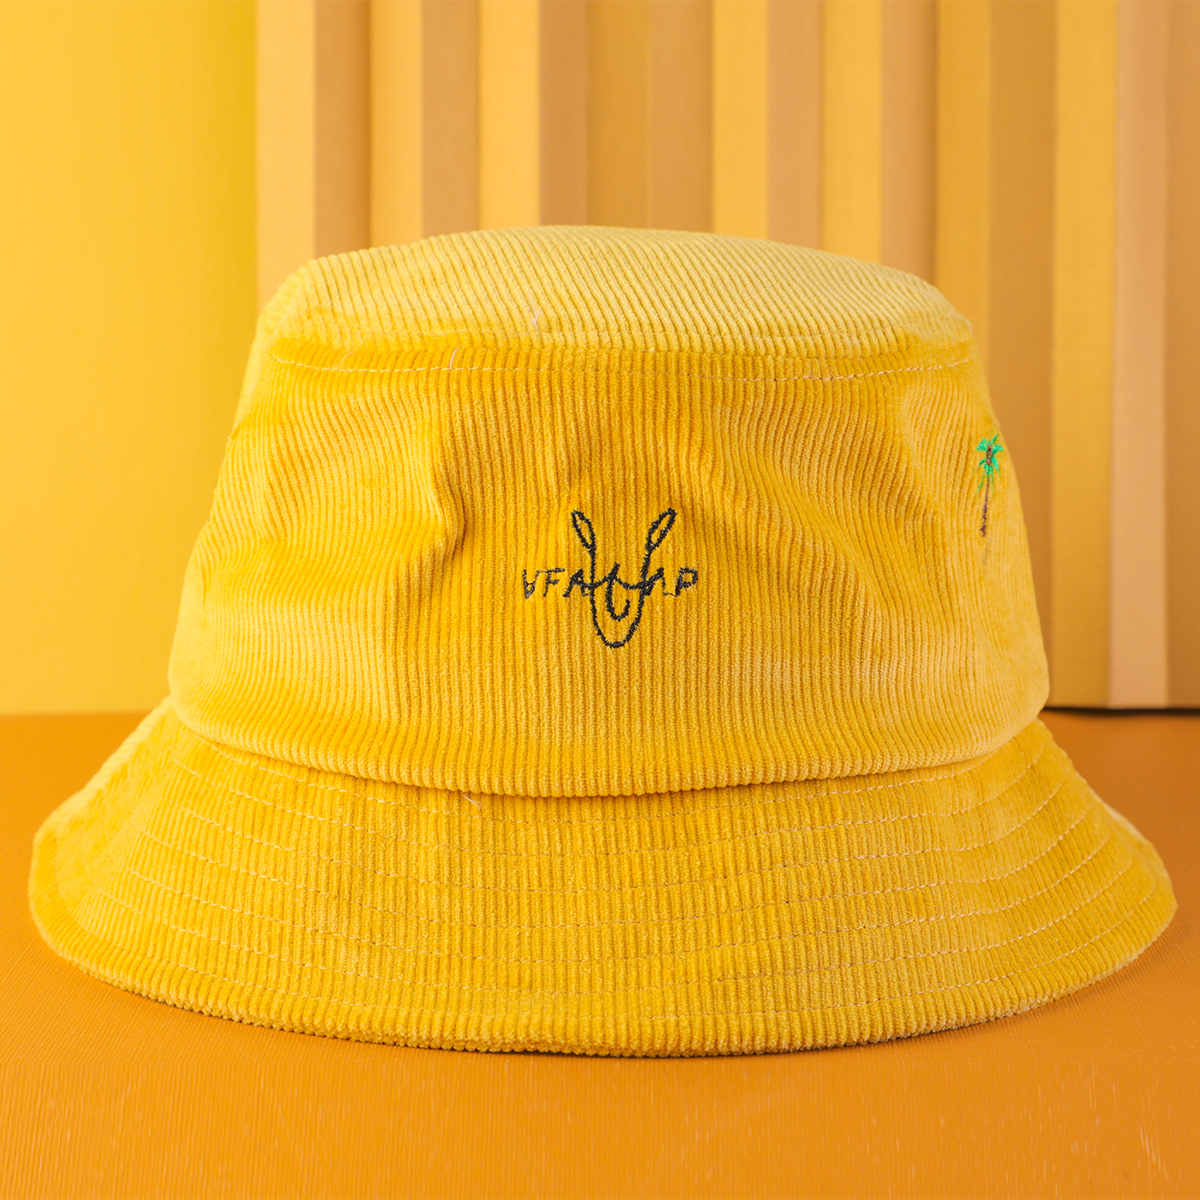 borduurwerk vfa logo gele corduroy emmer hoeden op maat